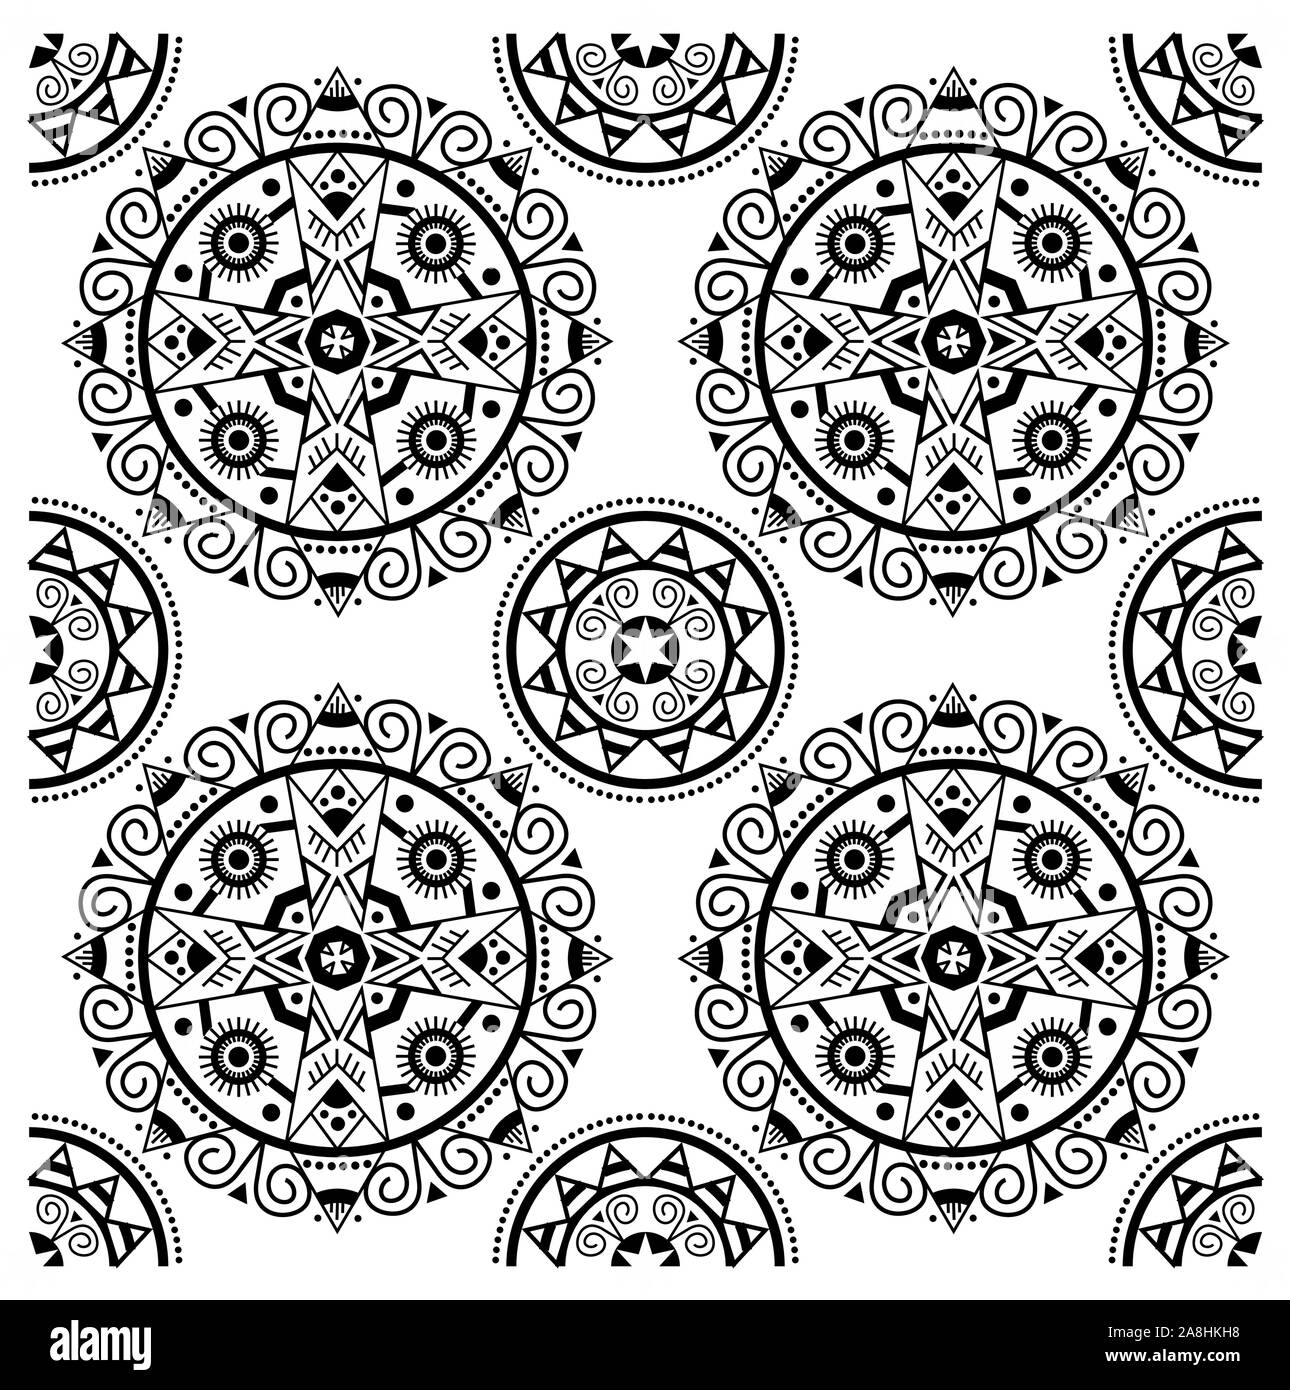 Geometrica pattern senza giunture, sfondo mandala, etnica, tradizionale, folk, stampa ornamentali. - Vettore Illustrazione Vettoriale